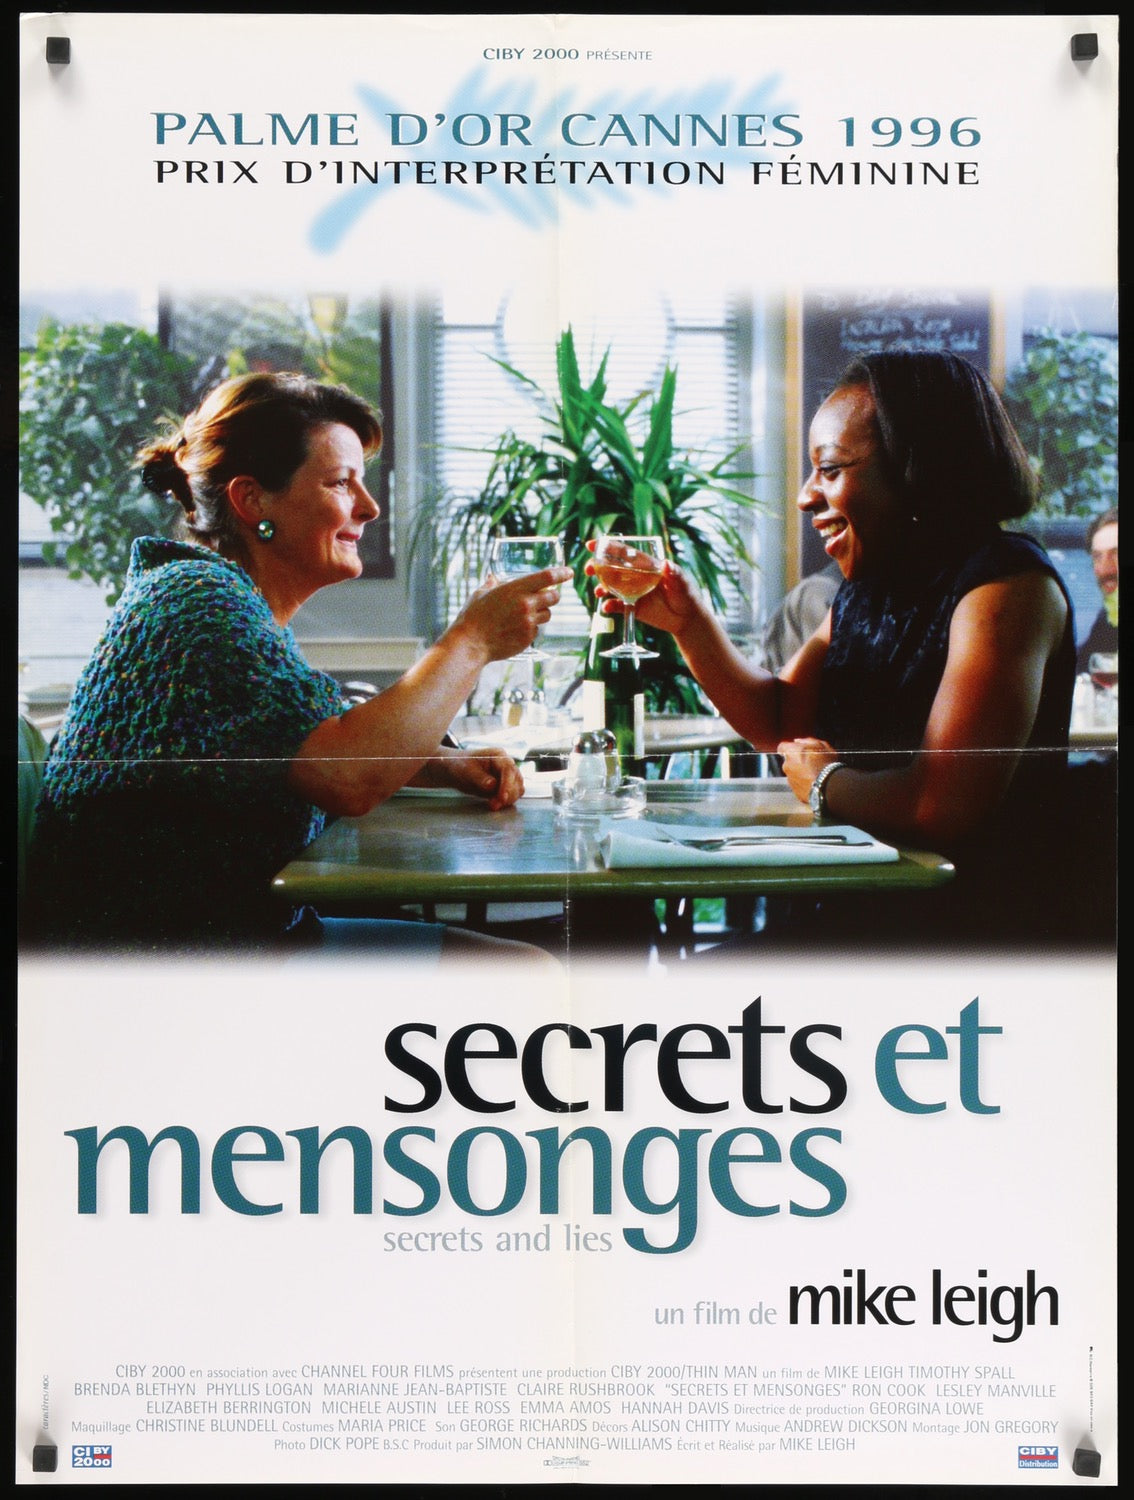 Secrets and Lies (1996) original movie poster for sale at Original Film Art